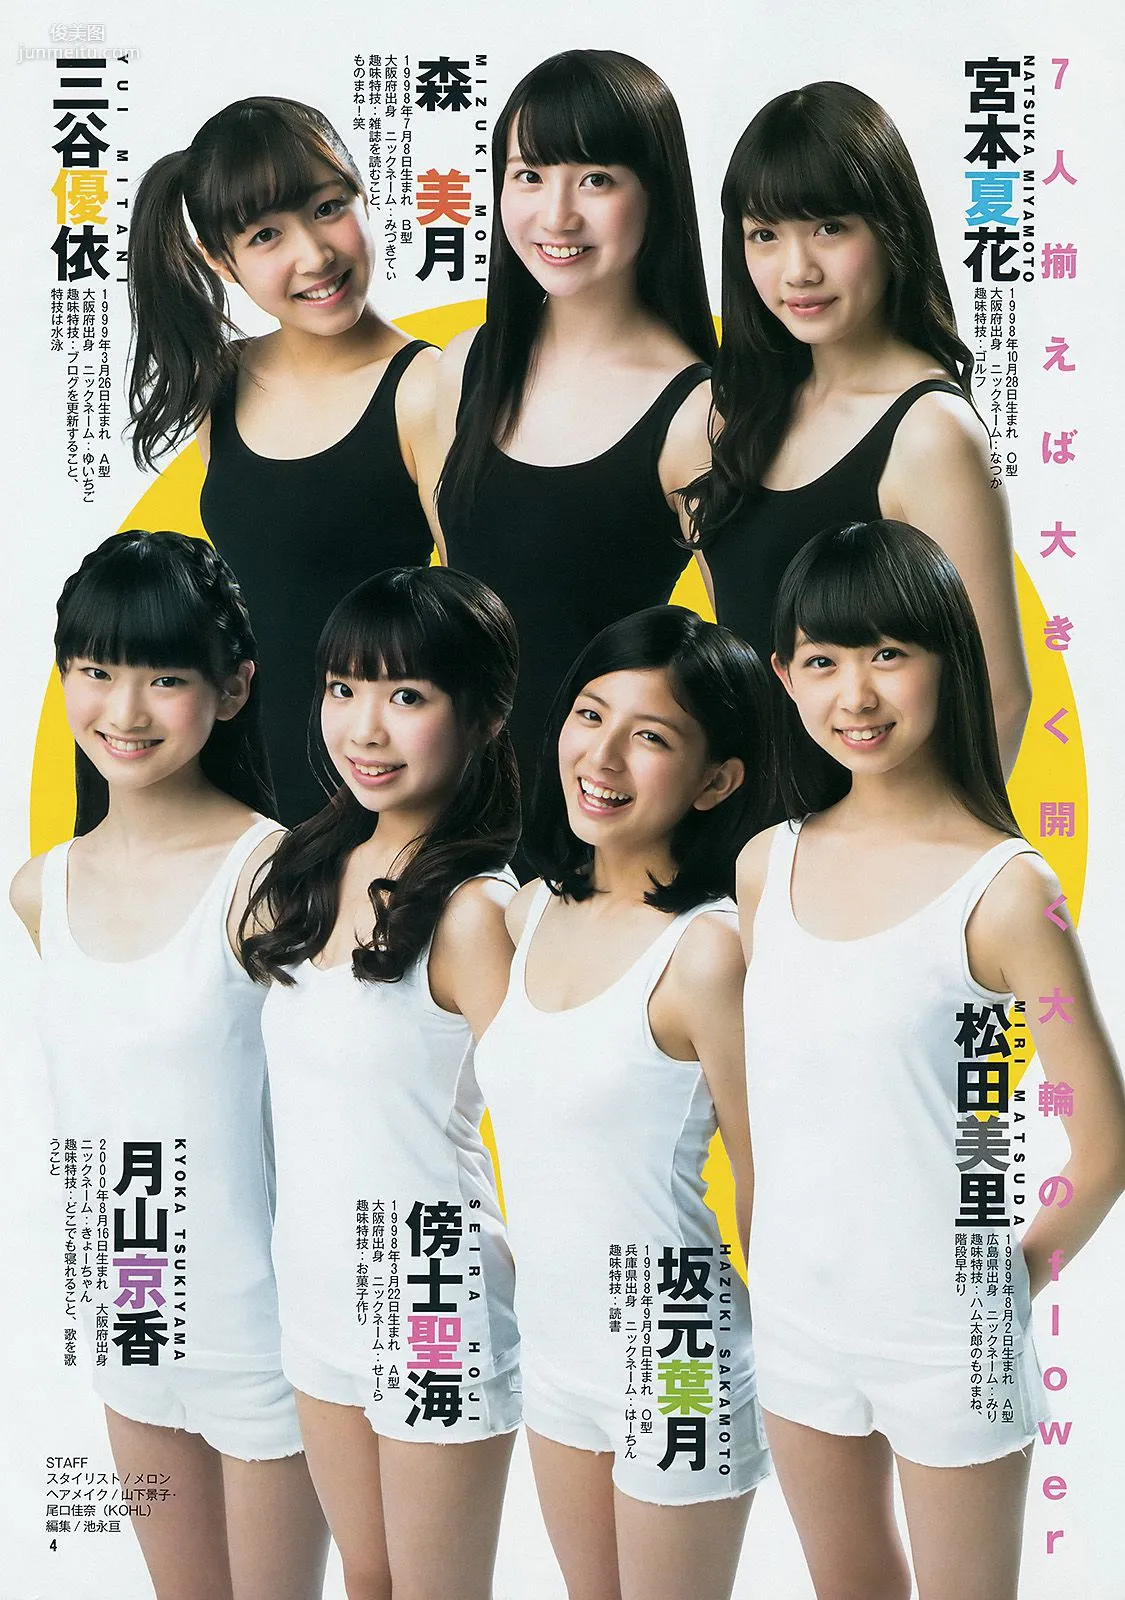 ギャルコン2014 制コレ アルティメット2014 大阪DAIZY7 [Weekly Young Jump] 2014年No.42 写真杂志17